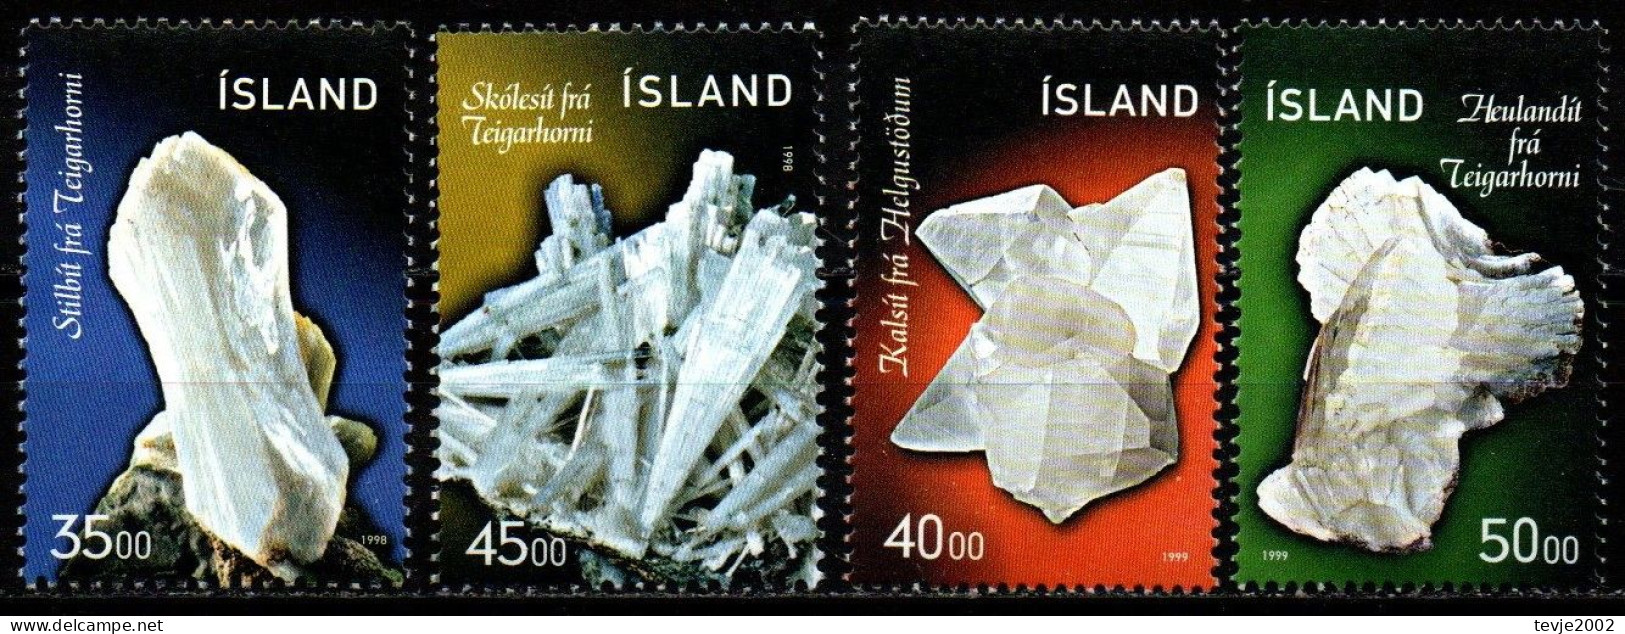 Island 1998/99 - Mi.Nr. 893/894 + 917/918 - Postfrisch MNH - Mineralien Minerals - Minerals